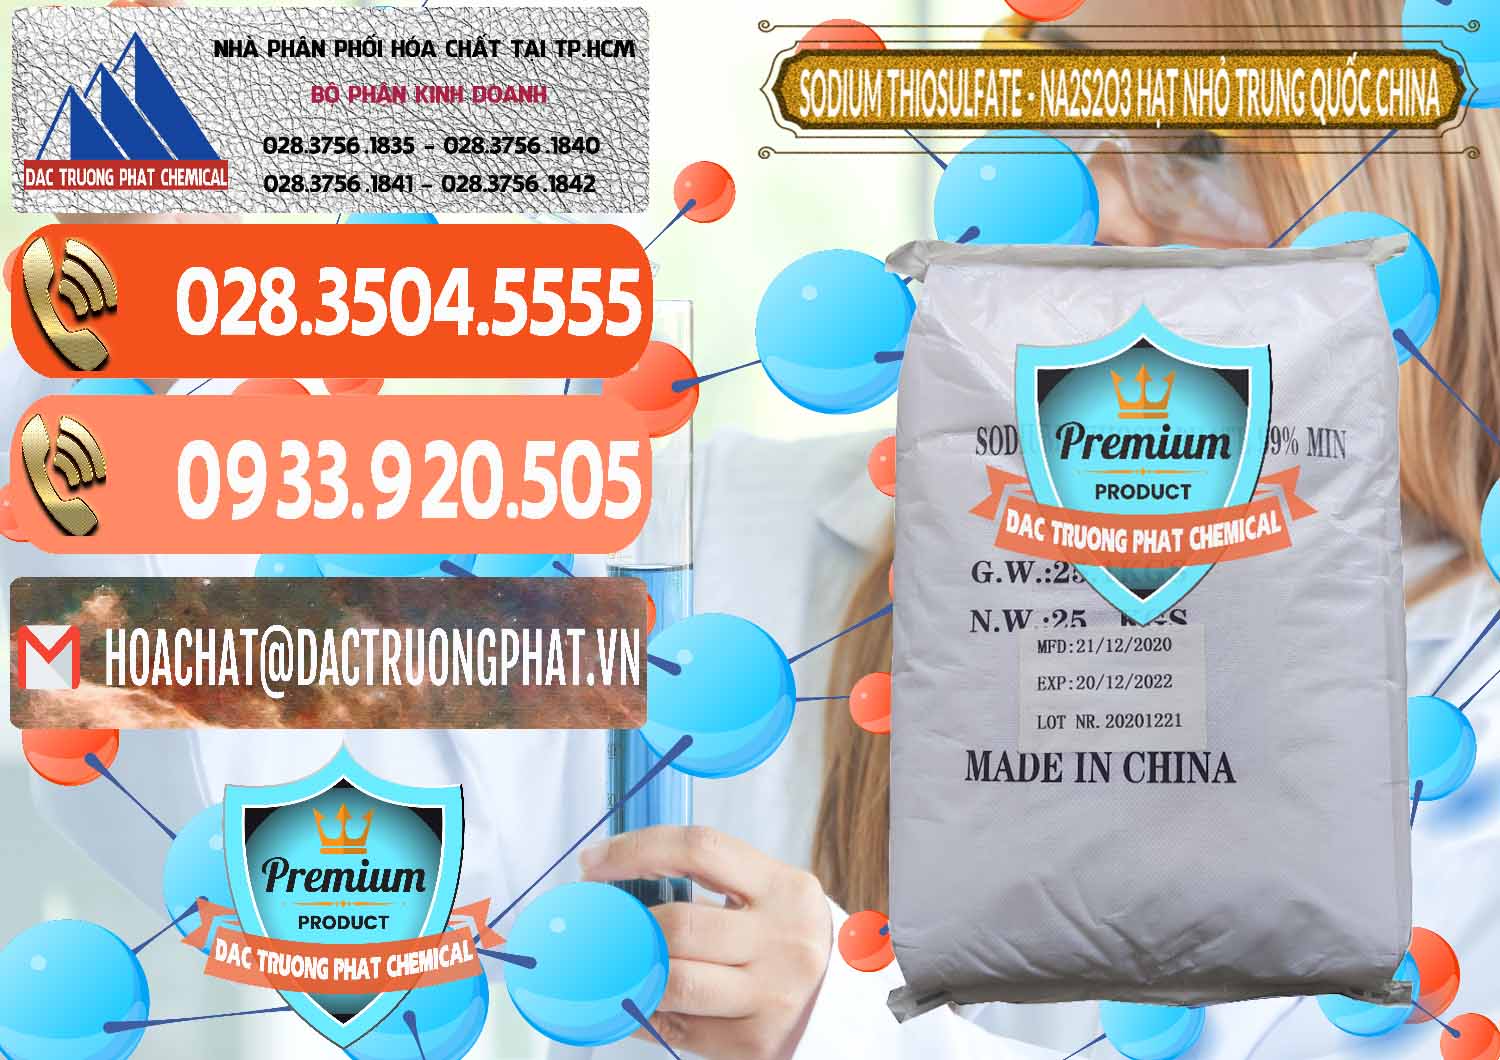 Kinh doanh _ bán Sodium Thiosulfate - NA2S2O3 Hạt Nhỏ Trung Quốc China - 0204 - Đơn vị nhập khẩu ( phân phối ) hóa chất tại TP.HCM - hoachatmientay.com